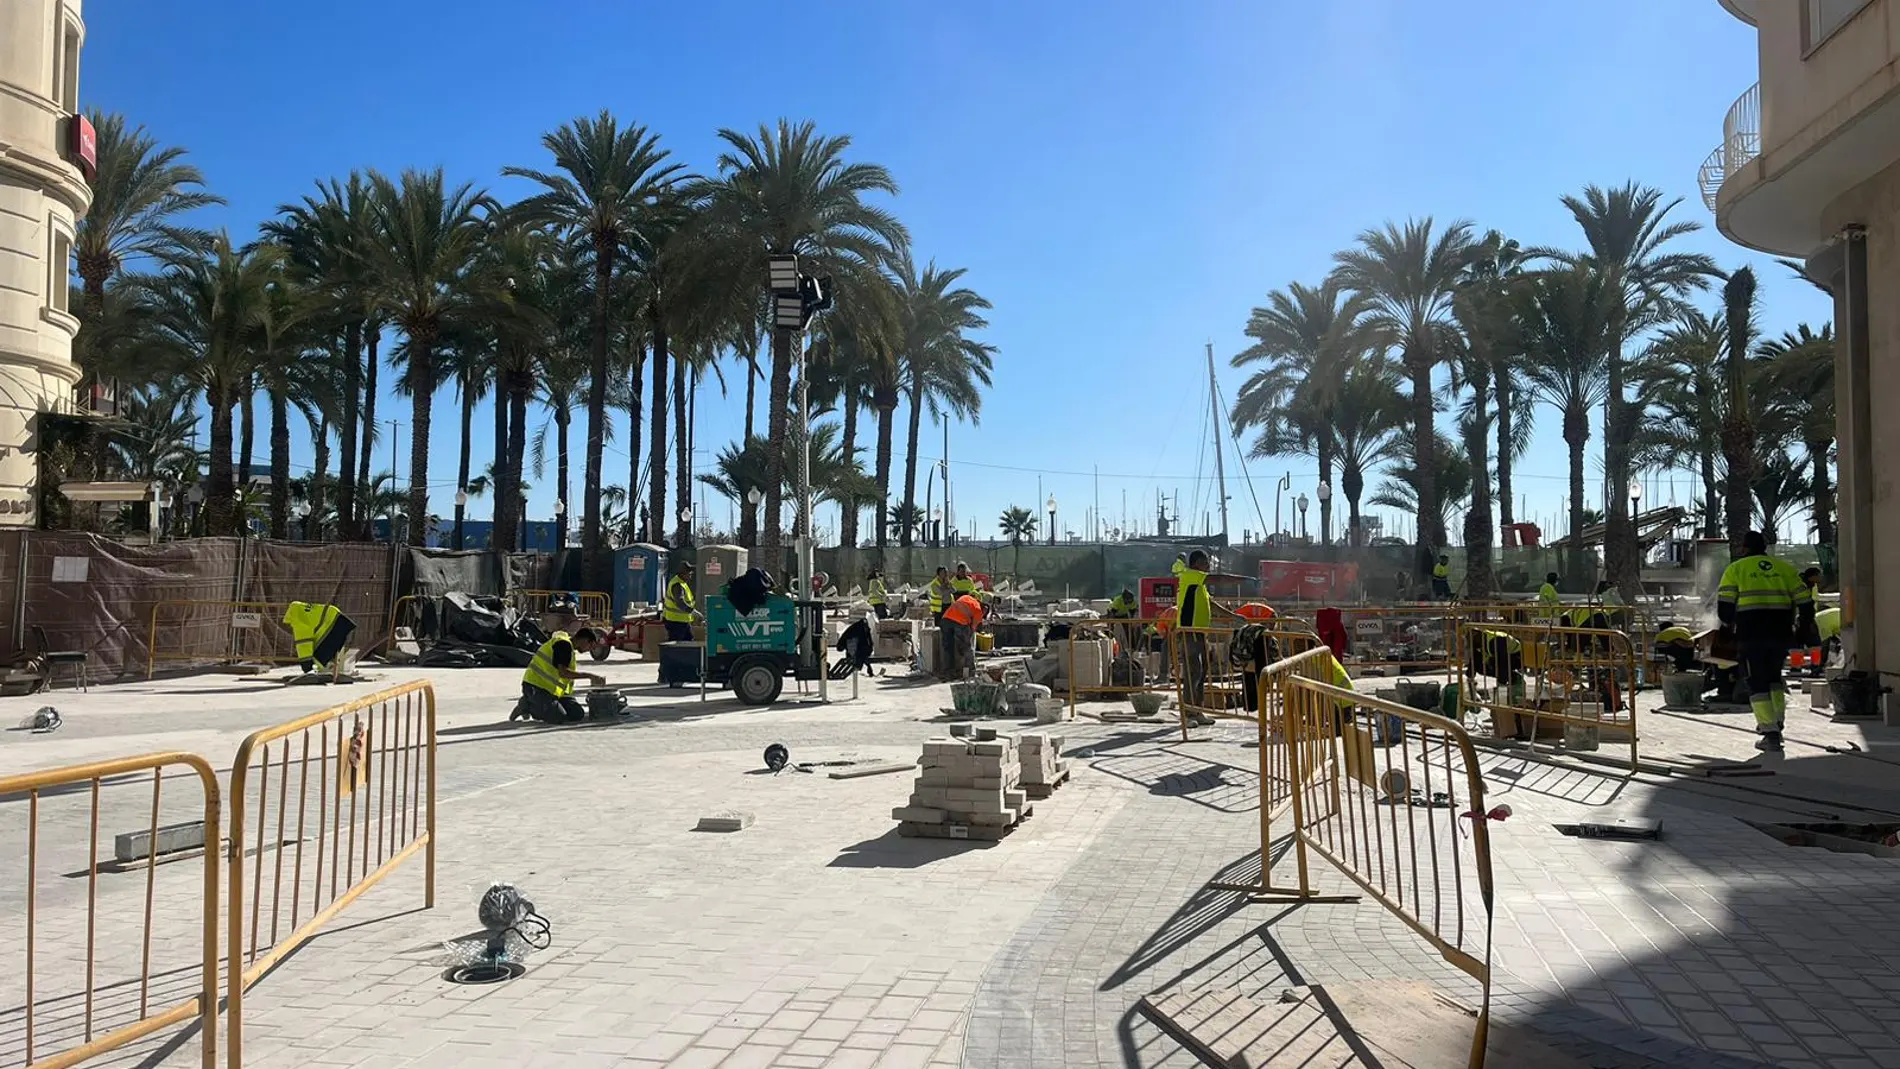 La zona de la Explanada, en su intersección con la Rambla, en la que se celebrará la fiesta de Nochevieja en Alicante está en obras.